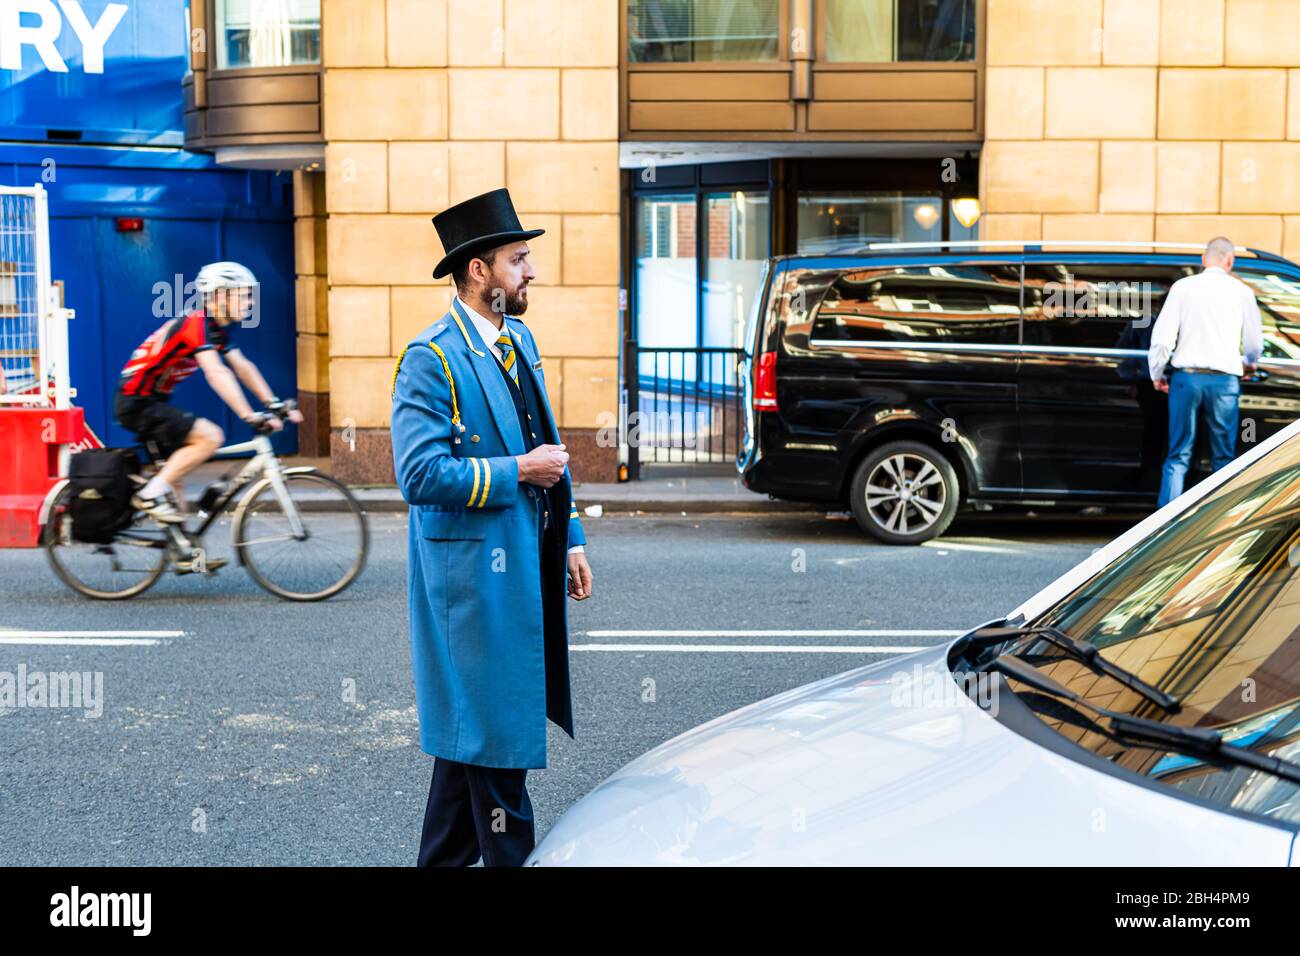 London, Großbritannien - 22. Juni 2018: Portier Portier in traditioneller Kleidung Hut und blauen Mantel stehen am Hoteleingang mit dem Auto hilft mit Gepäck Stockfoto